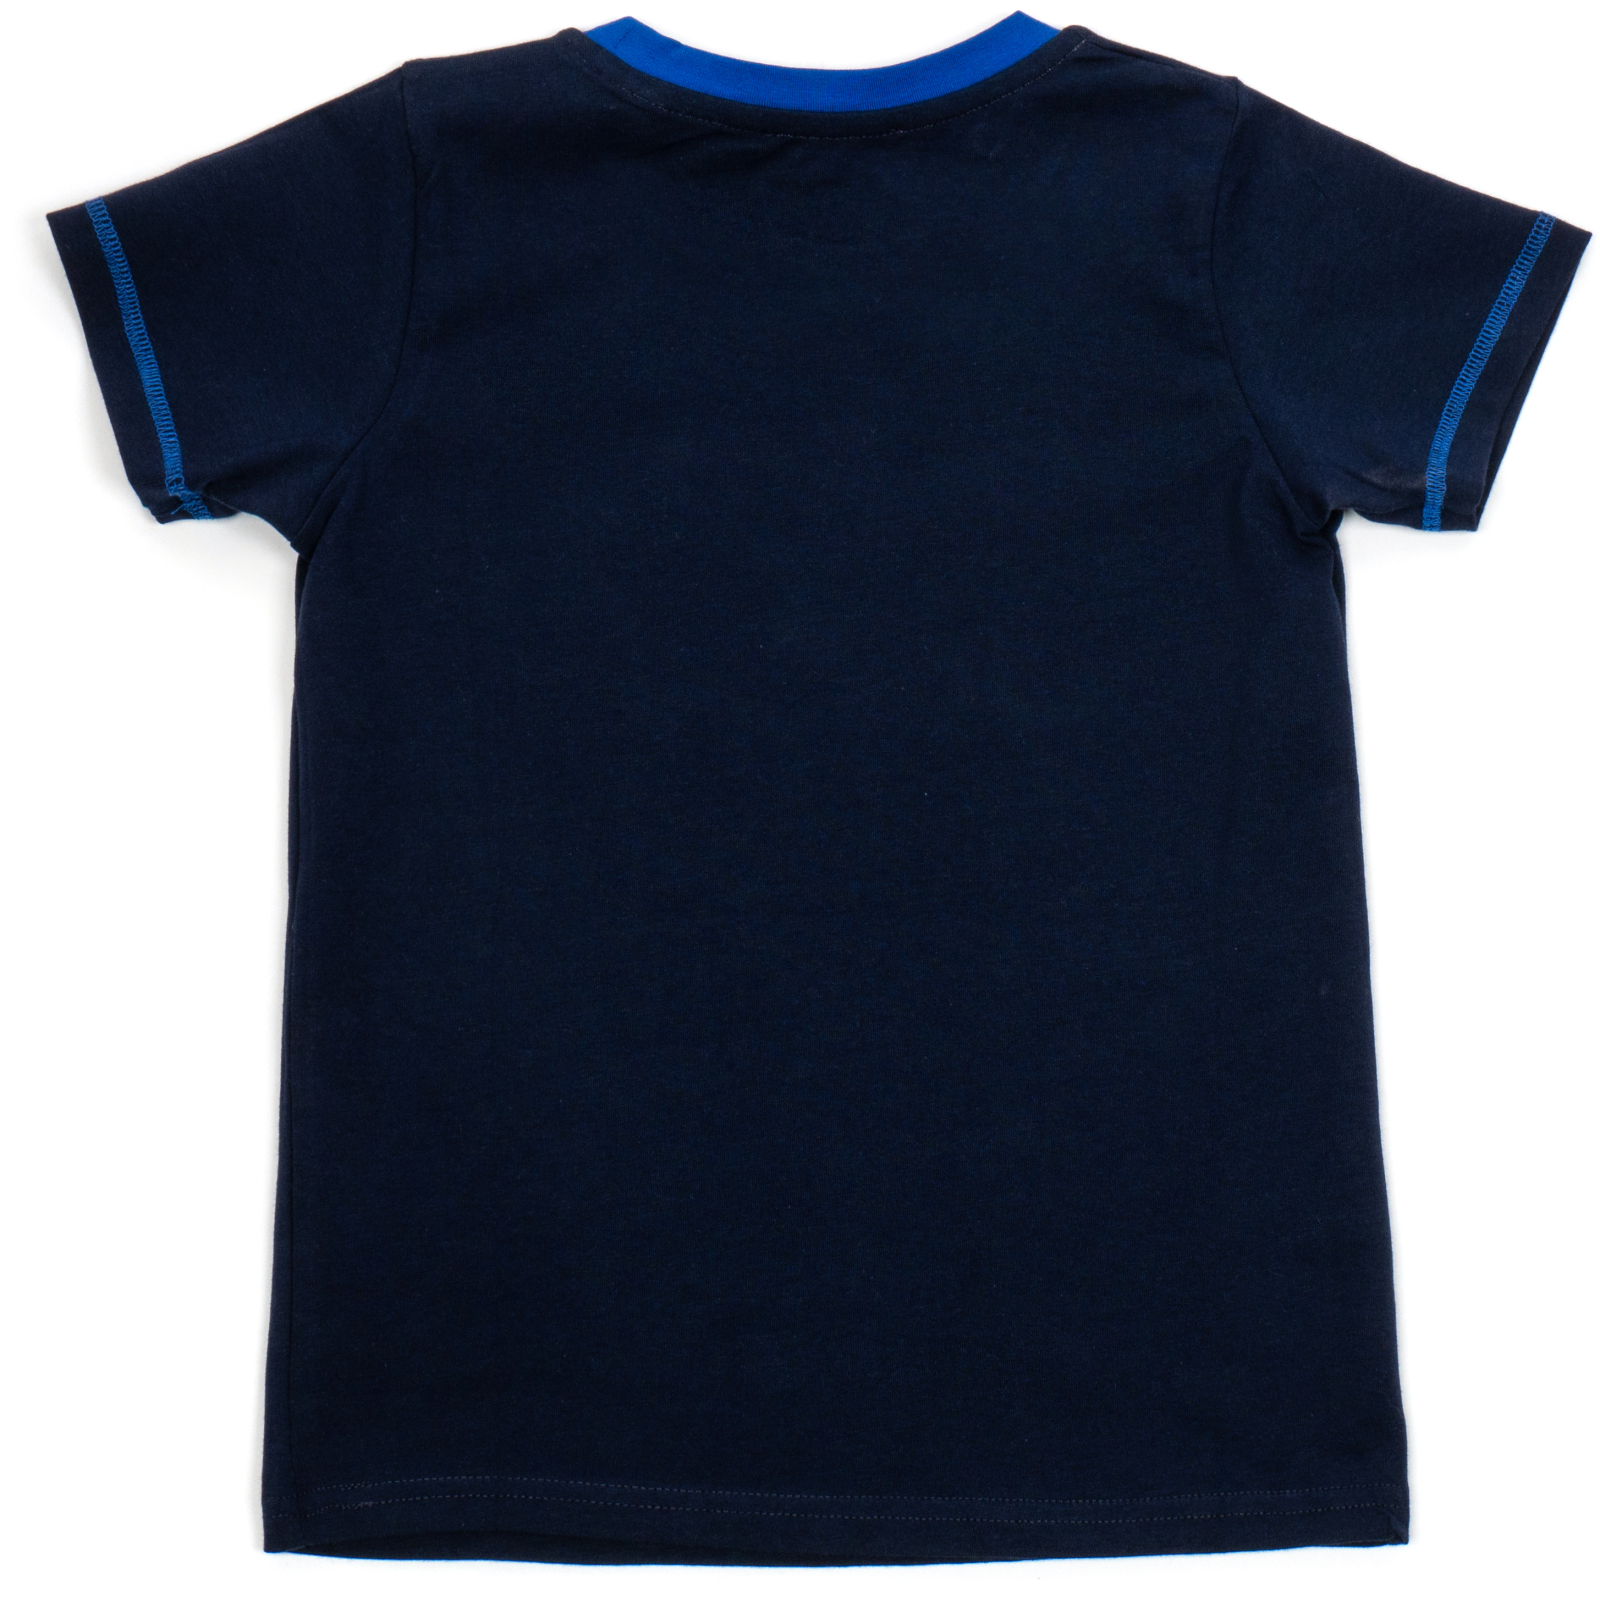 Пижама Matilda с футболкой (11701-2-110B-blue) изображение 5